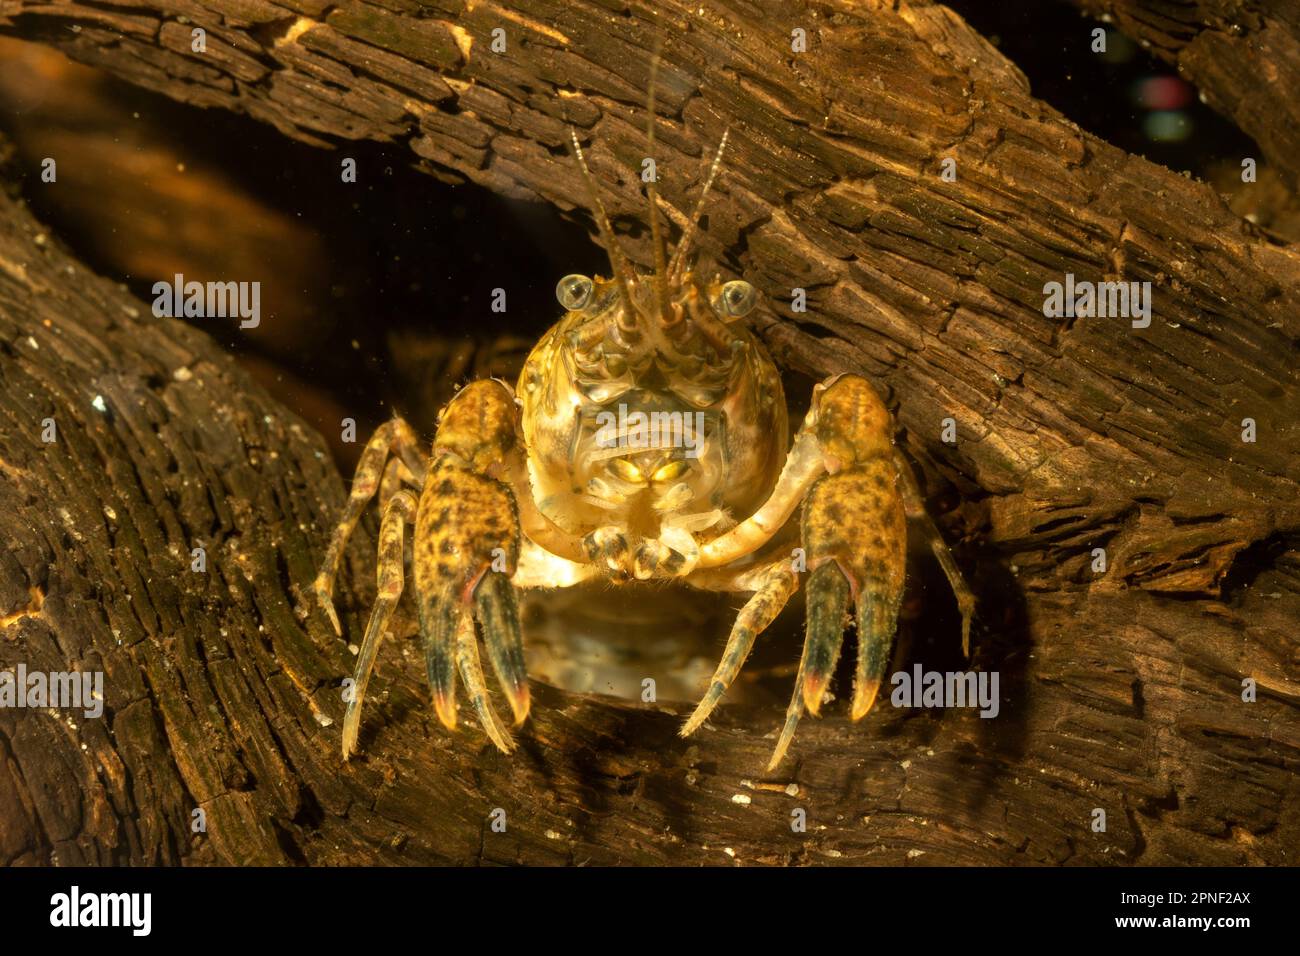 Spinycheek-Flusskrebse, amerikanische Flusskrebse, gestreifte Flusskrebse (Orconectes limosus, Cambarus affinis), lauern in einer windigen Höhle Stockfoto